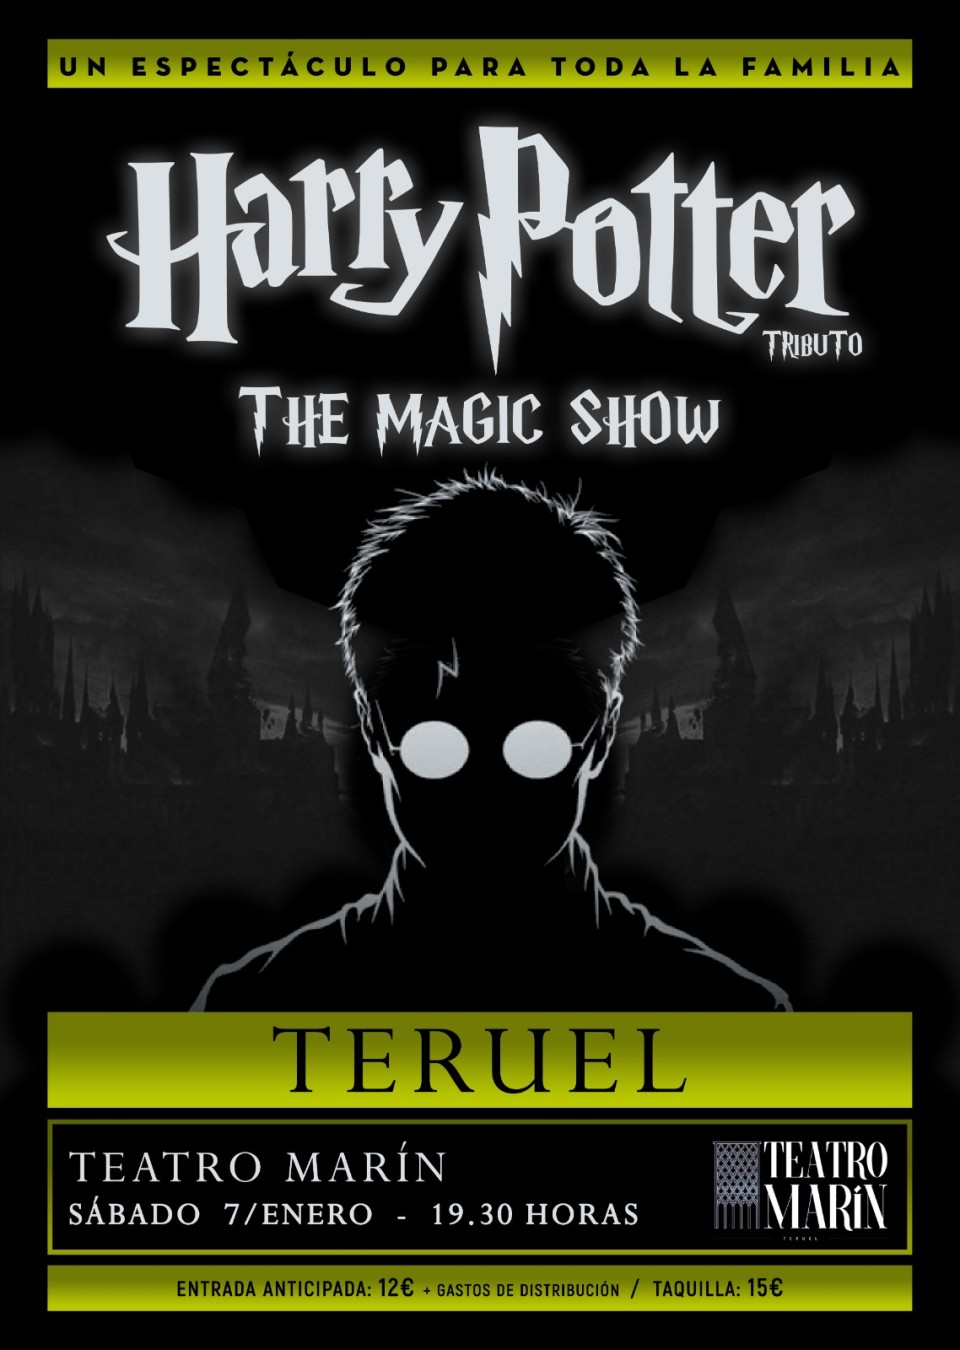 Imagen La magia de Harry Potter llegará a Teruel en Enero